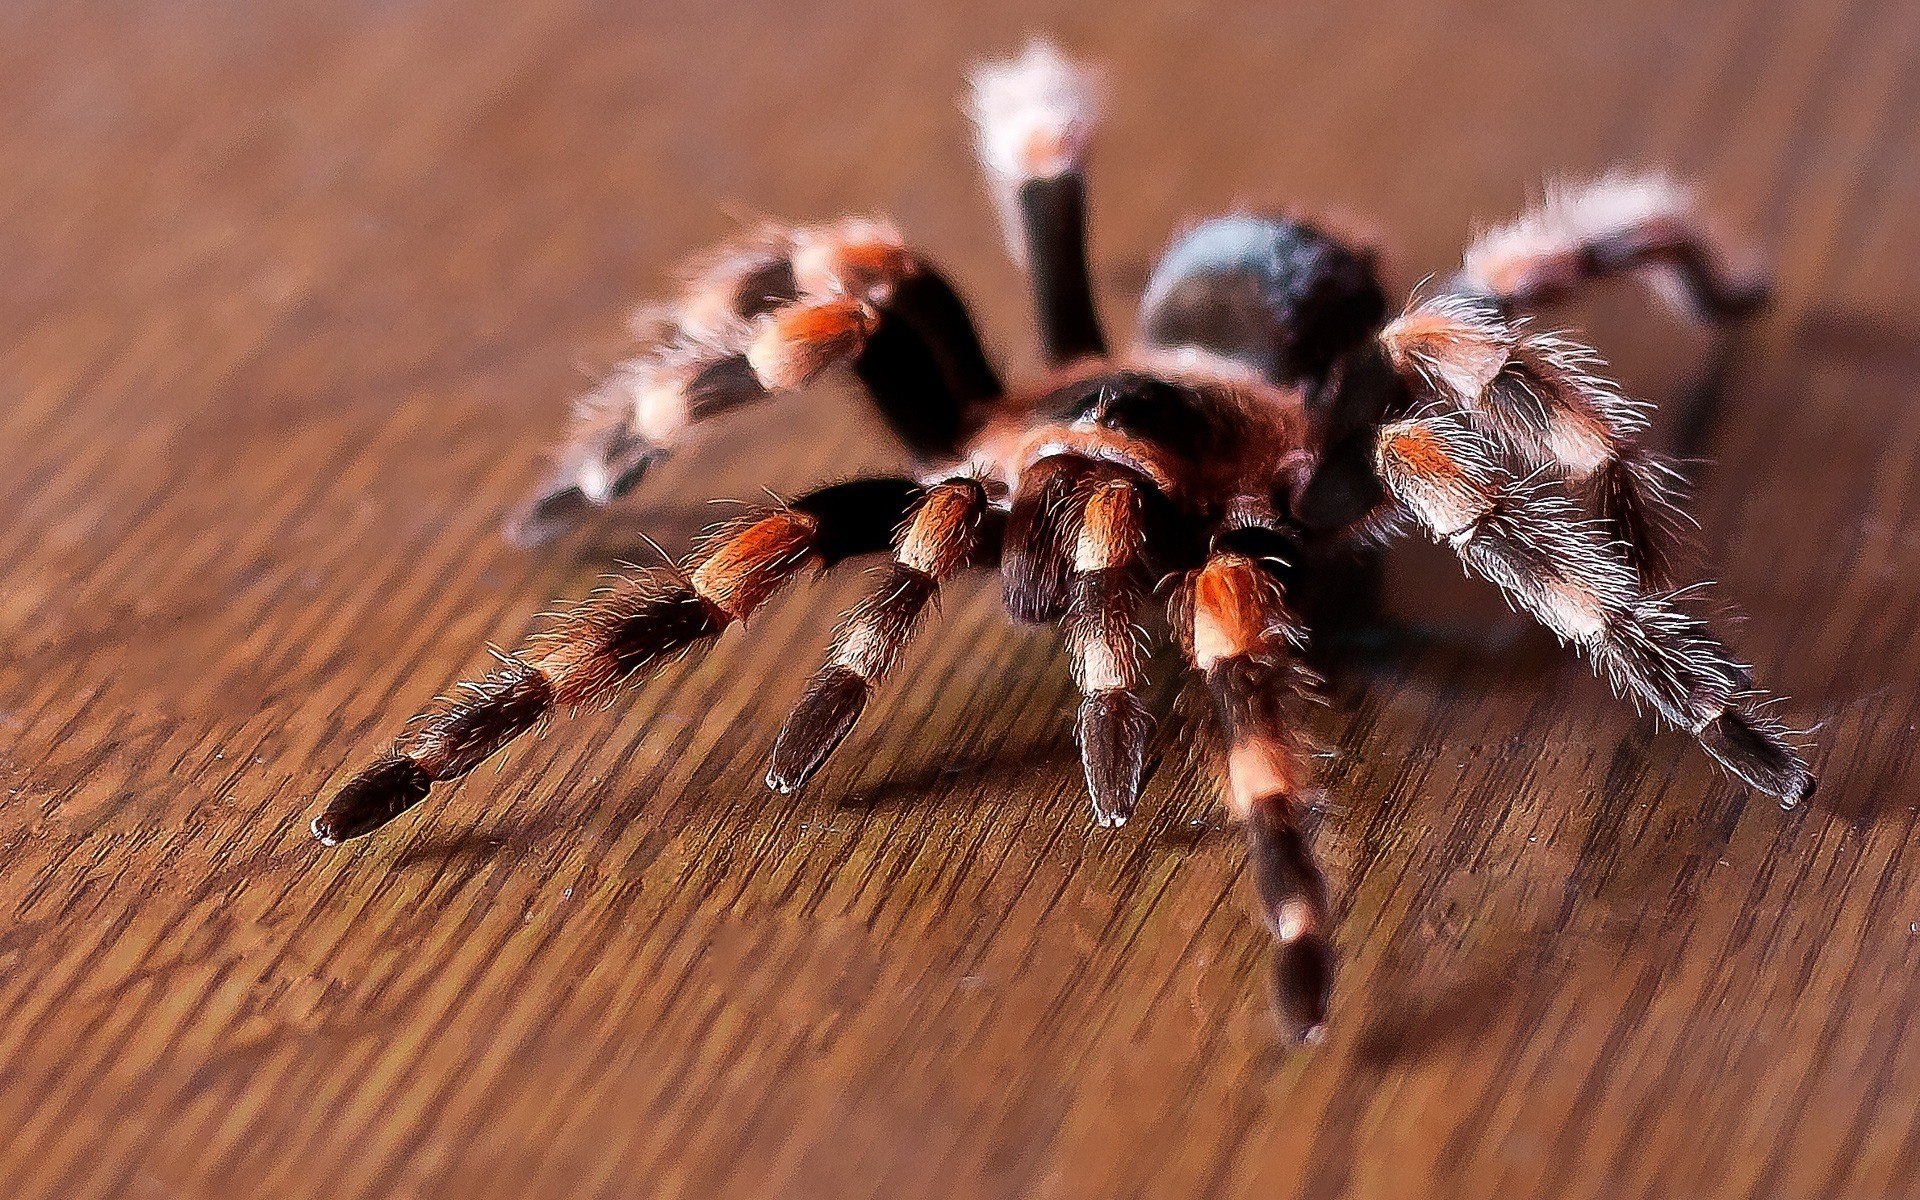 насекомые паук паукообразный тарантул волосатые беспозвоночных насекомое опасность крупным планом жутковато природа фобия страх животное дикой природы древесины рядом страшно